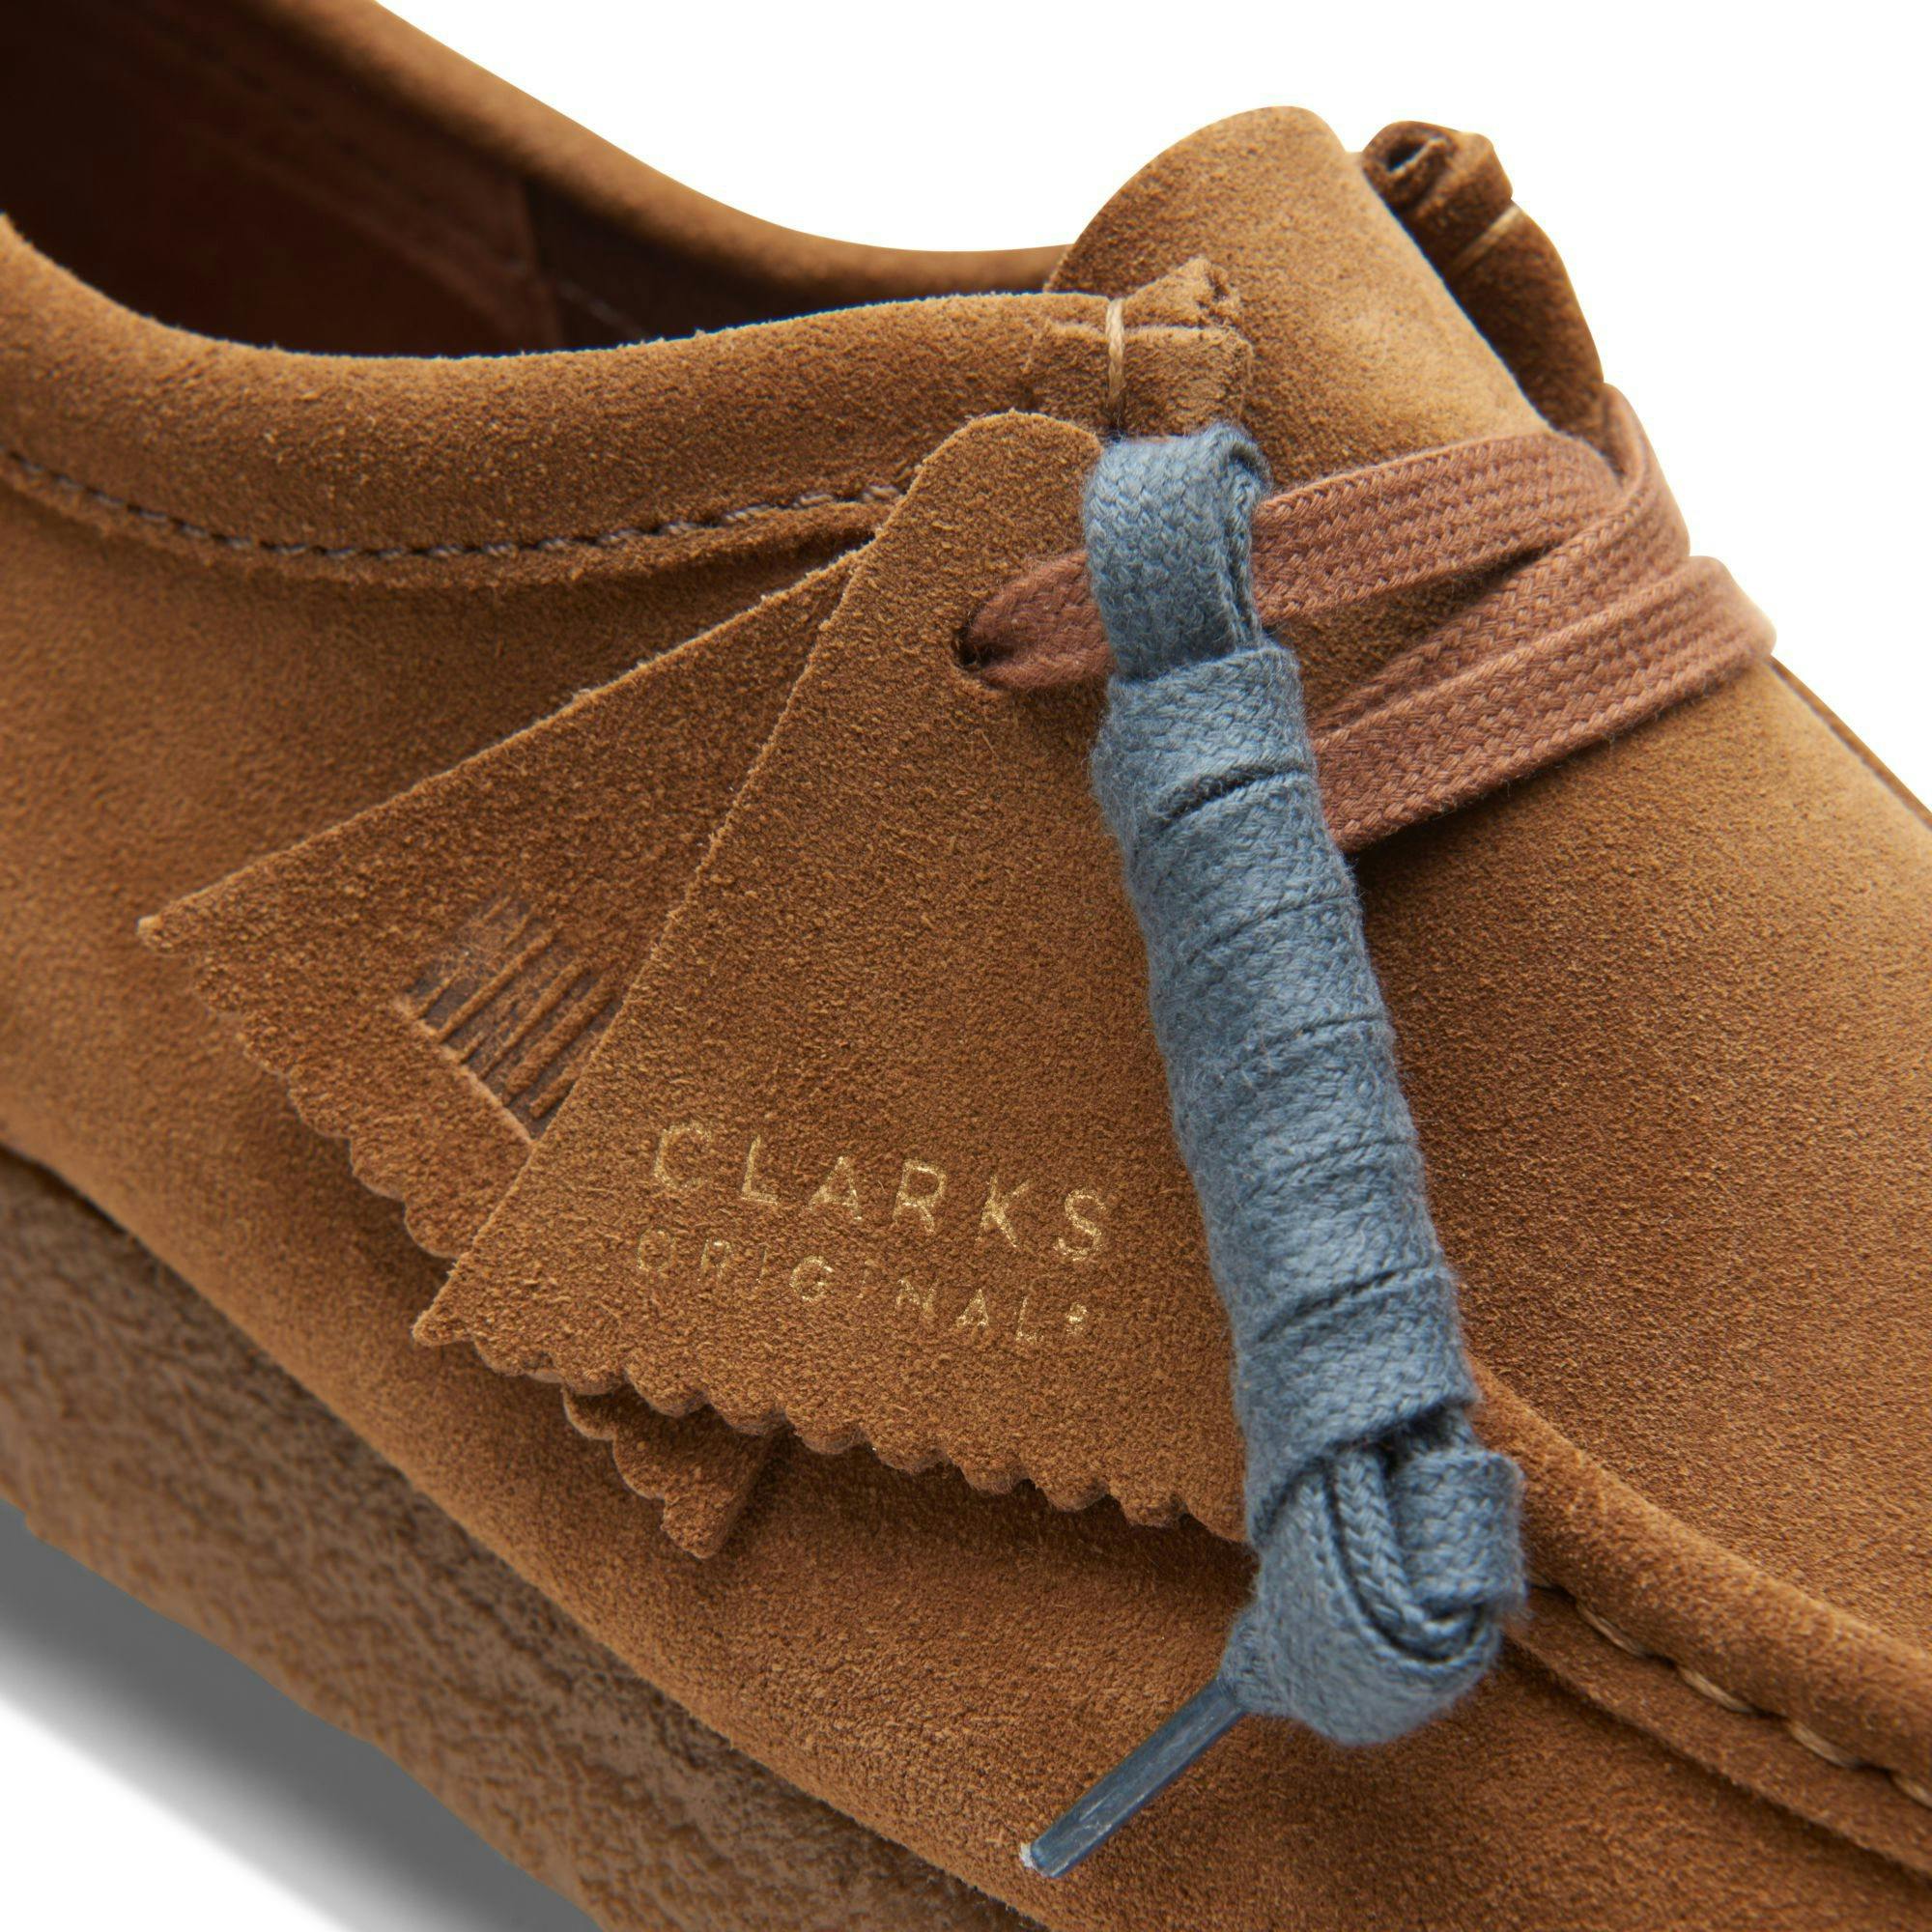 Clarks Originals Wallabee Cola Check Suede Shoes